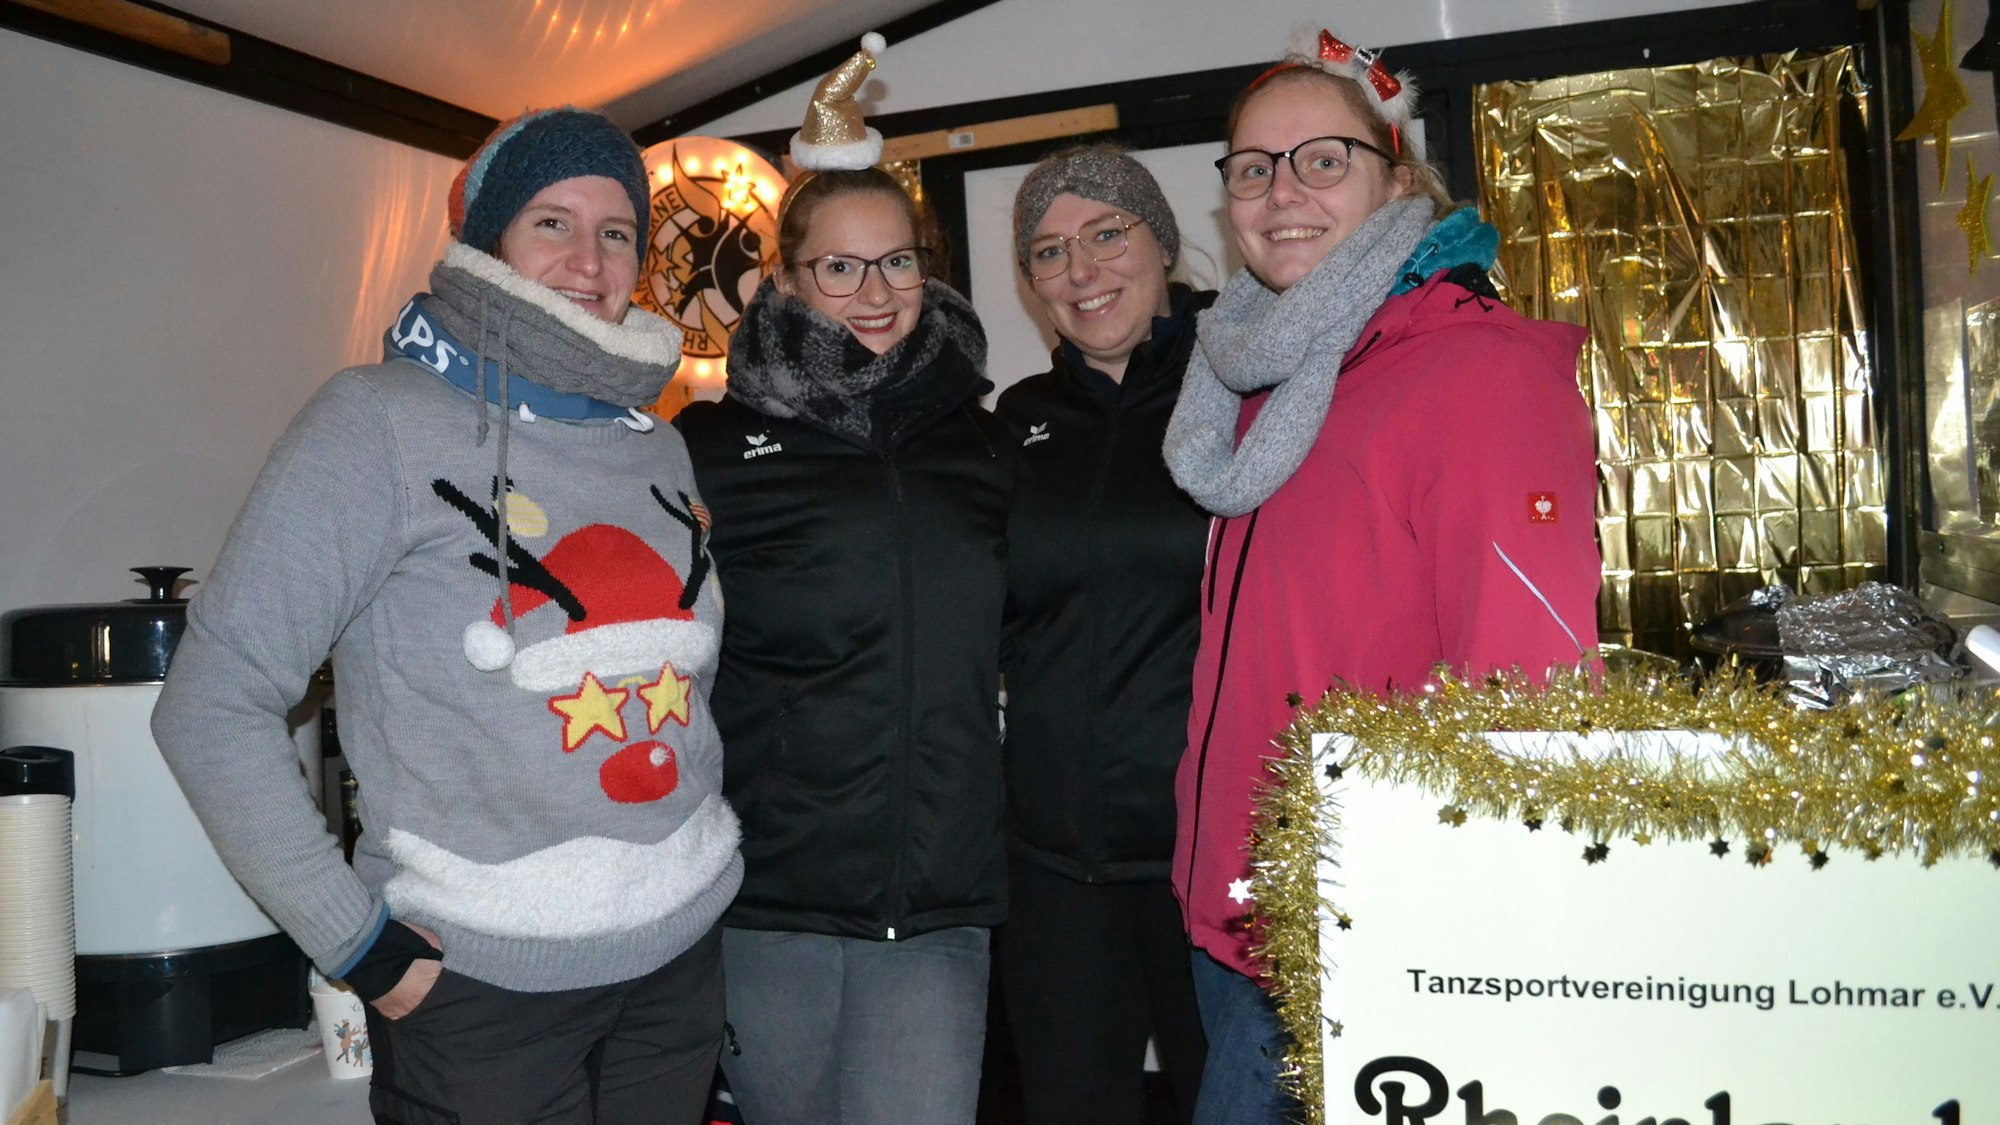 Vier junge Frauen an einem weihnachtlich dekoriertem Glühweinstand.